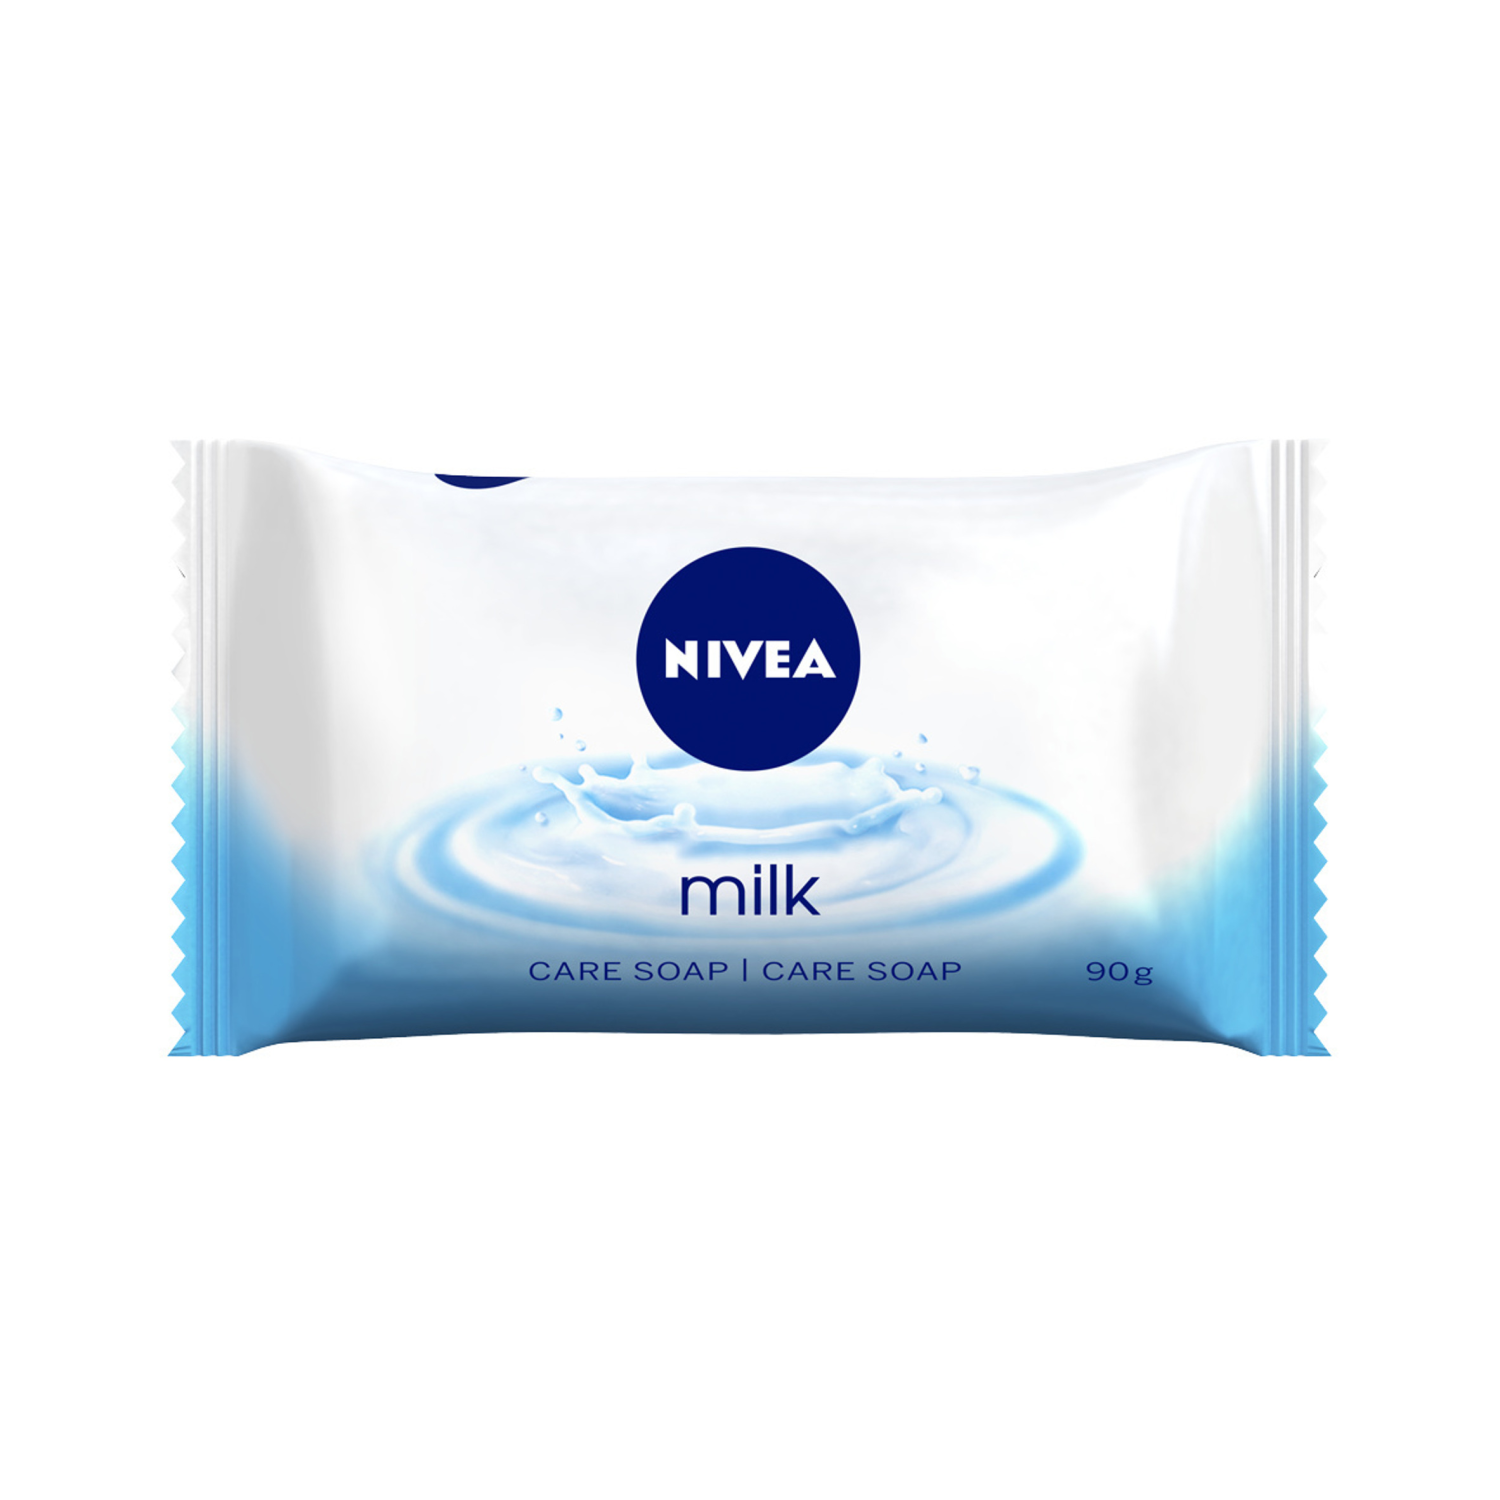 Nivea Milk ухаживающее твердое мыло, 90 г